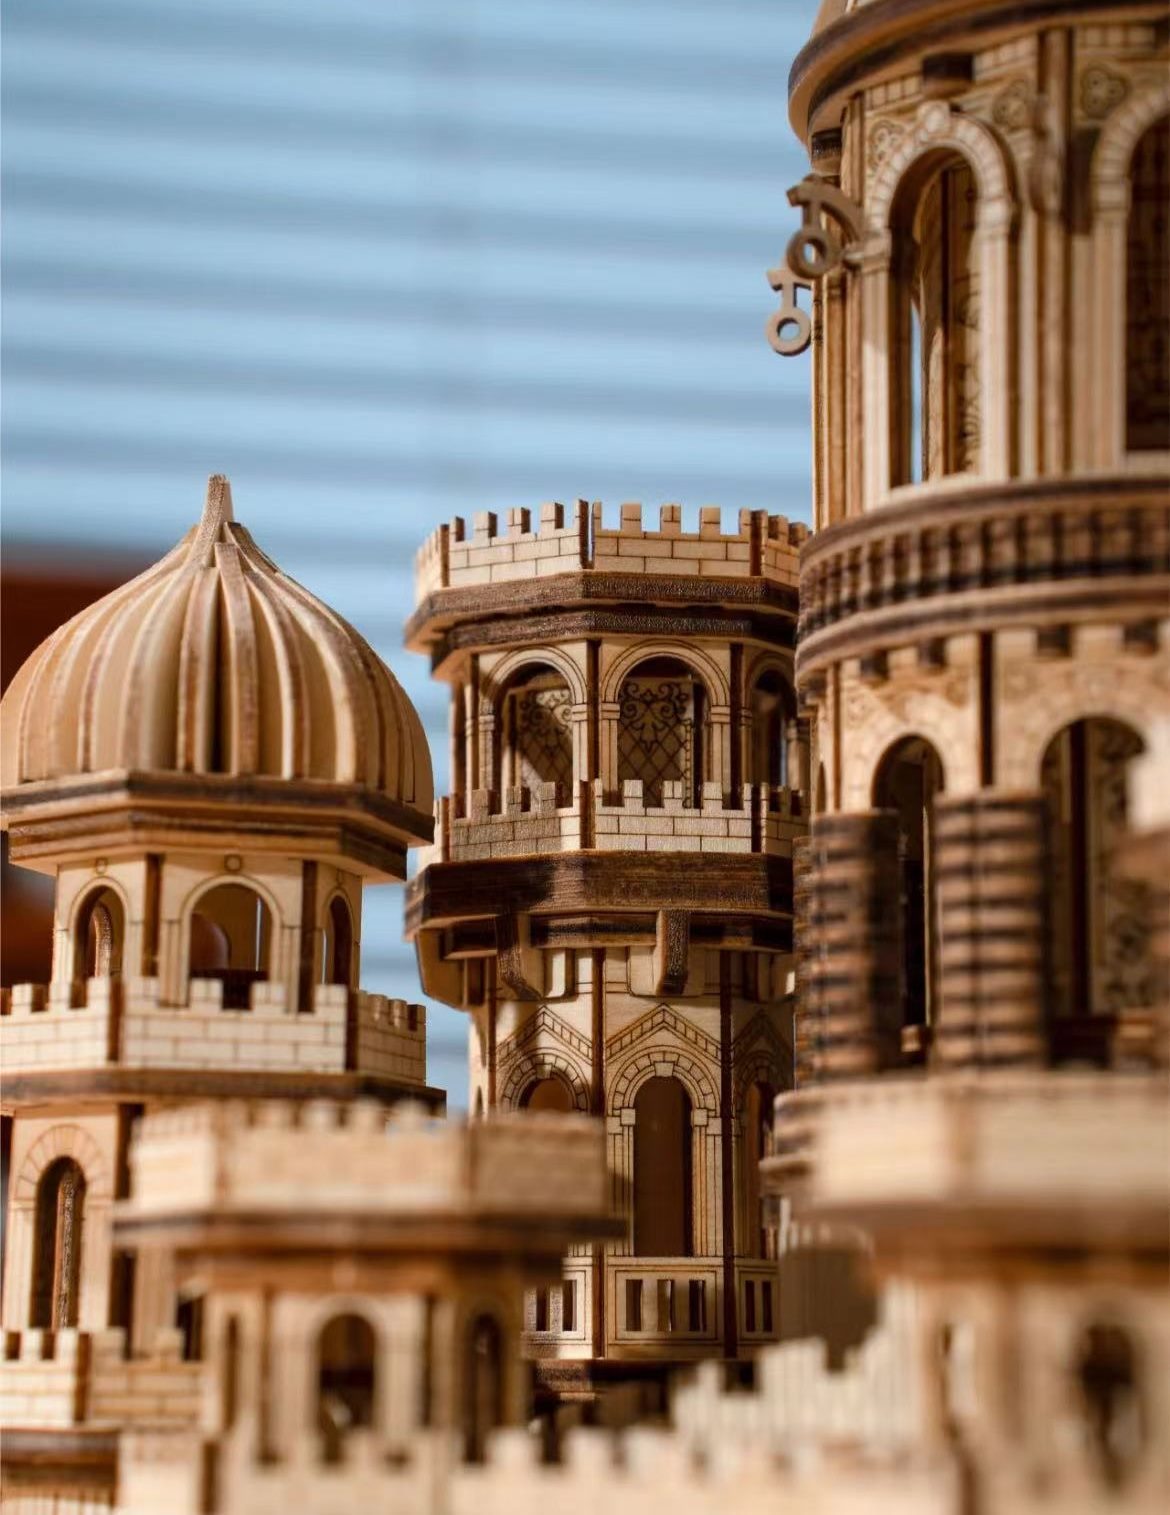 Magic Castle 3D Wooden Puzzle | Moving Gears | Mechanical Models | Miniature - detail